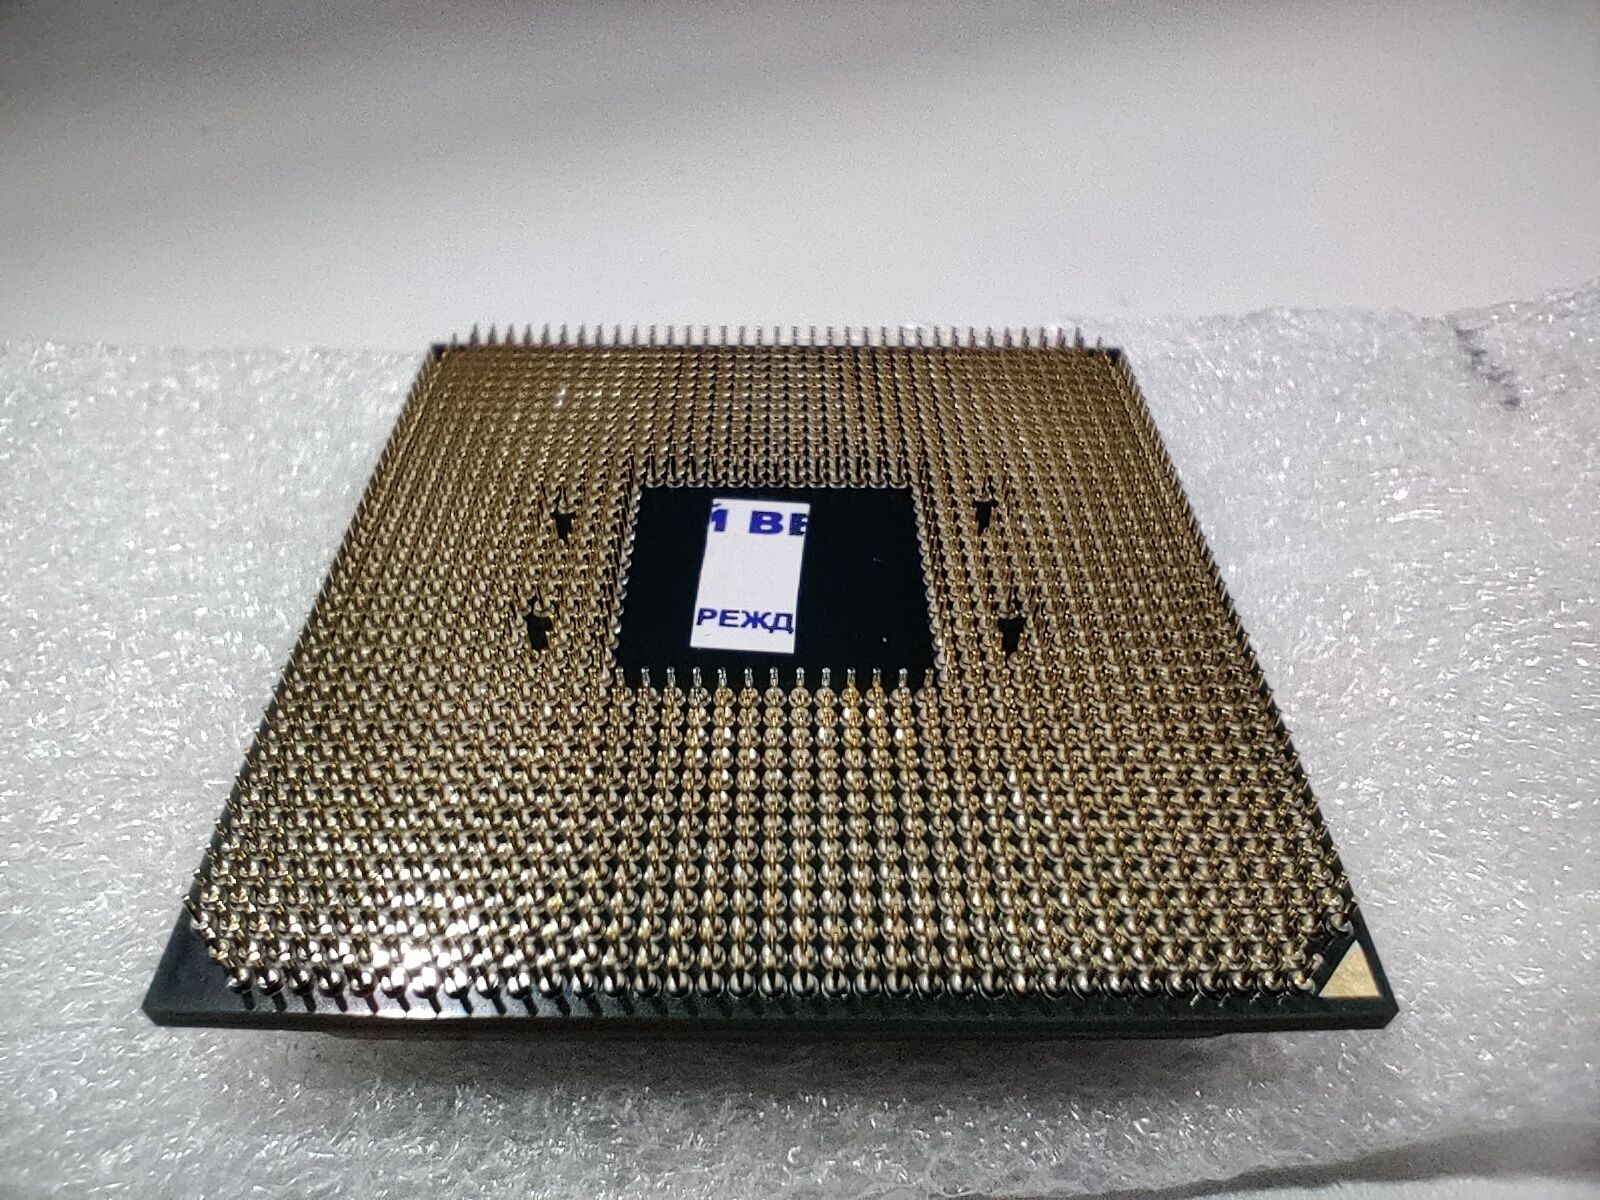 Процессор AMD Ryzen 5 3600, AM4, OEM (б/у)
Тип процессора: Ryzen 5
Со